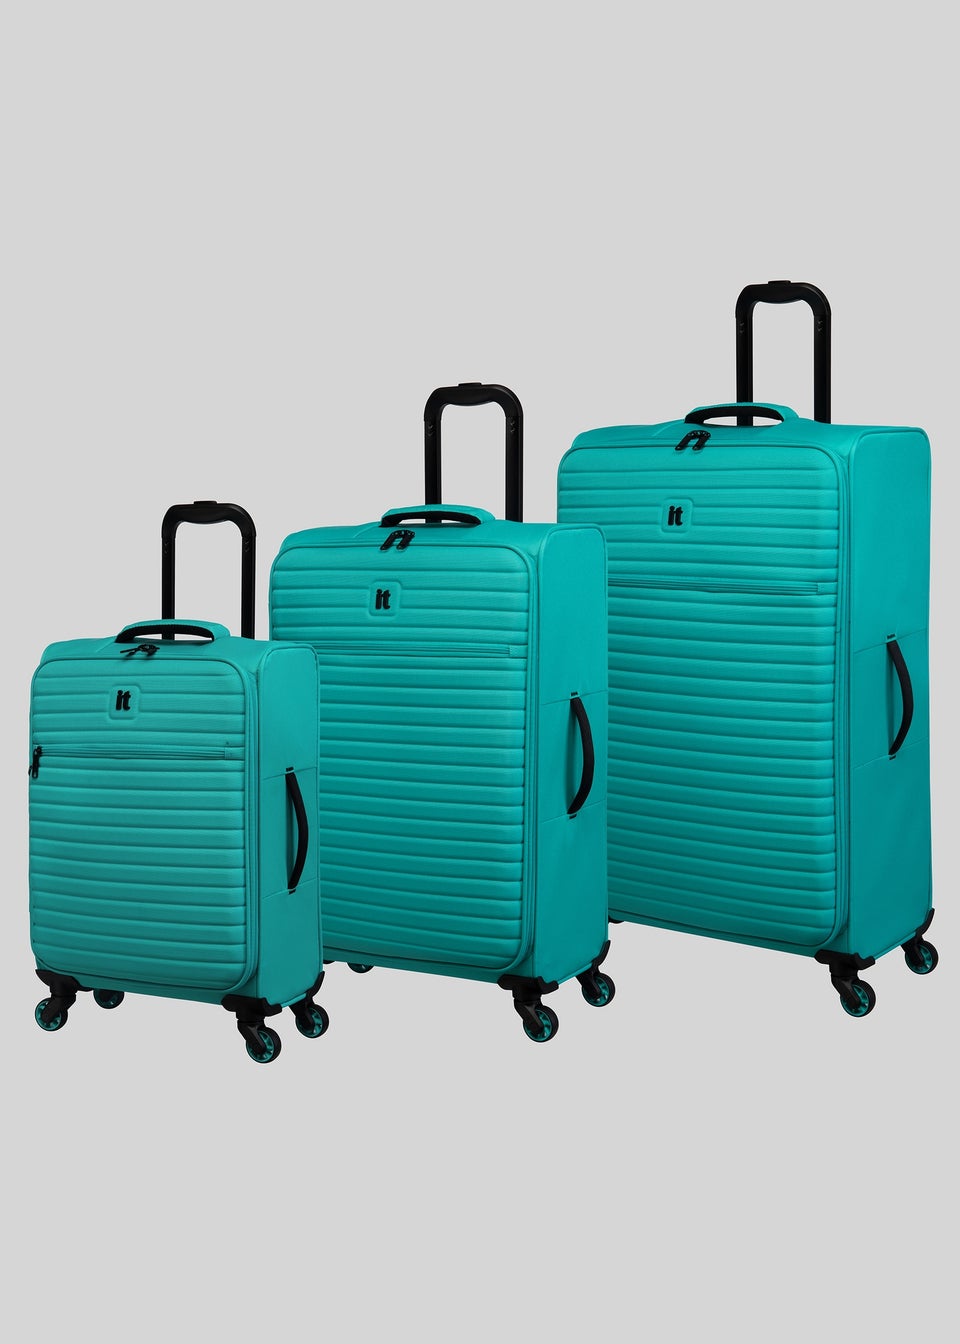 IT Luggage Turquoise Soft Shell Suitcase